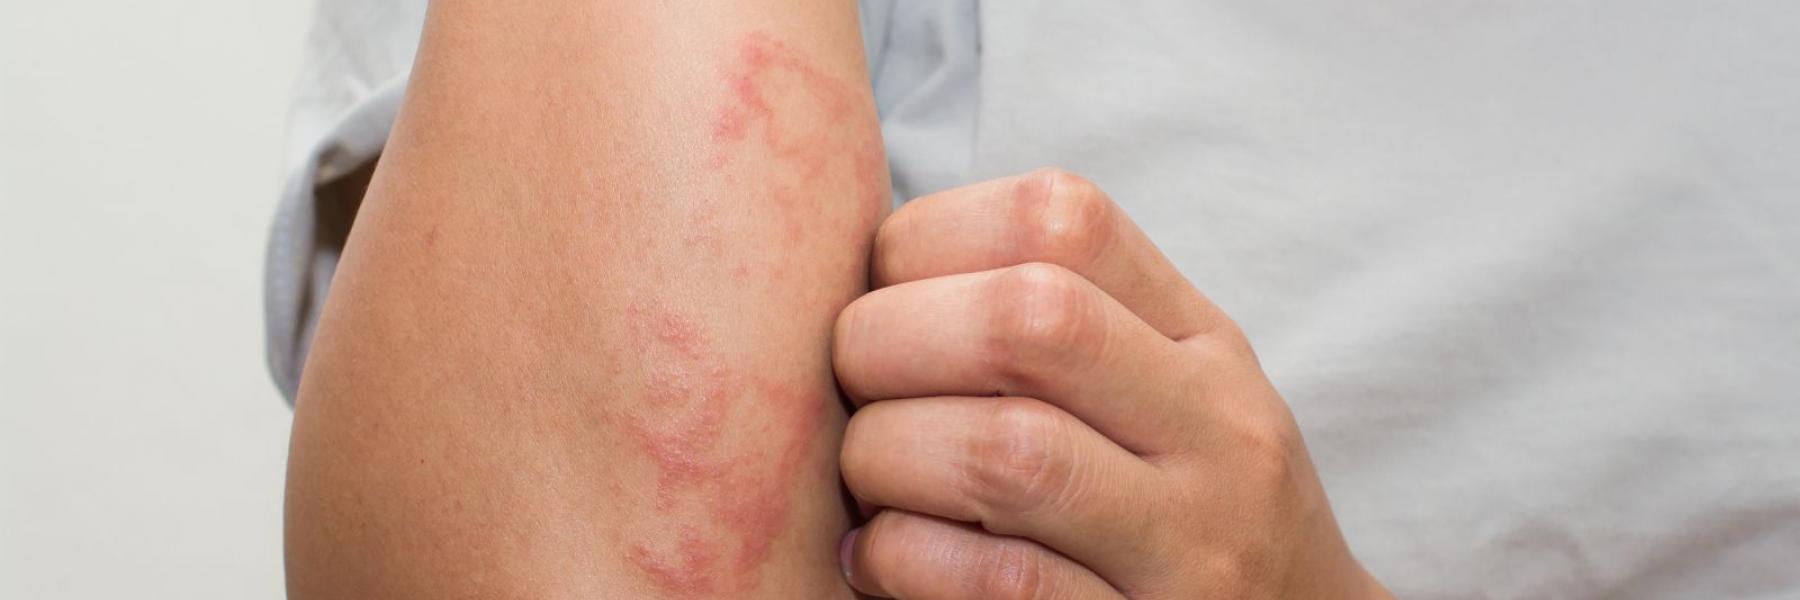 هل يعد الطفح الجلدي علامة من علامات الإصابة بكوفيد-19؟